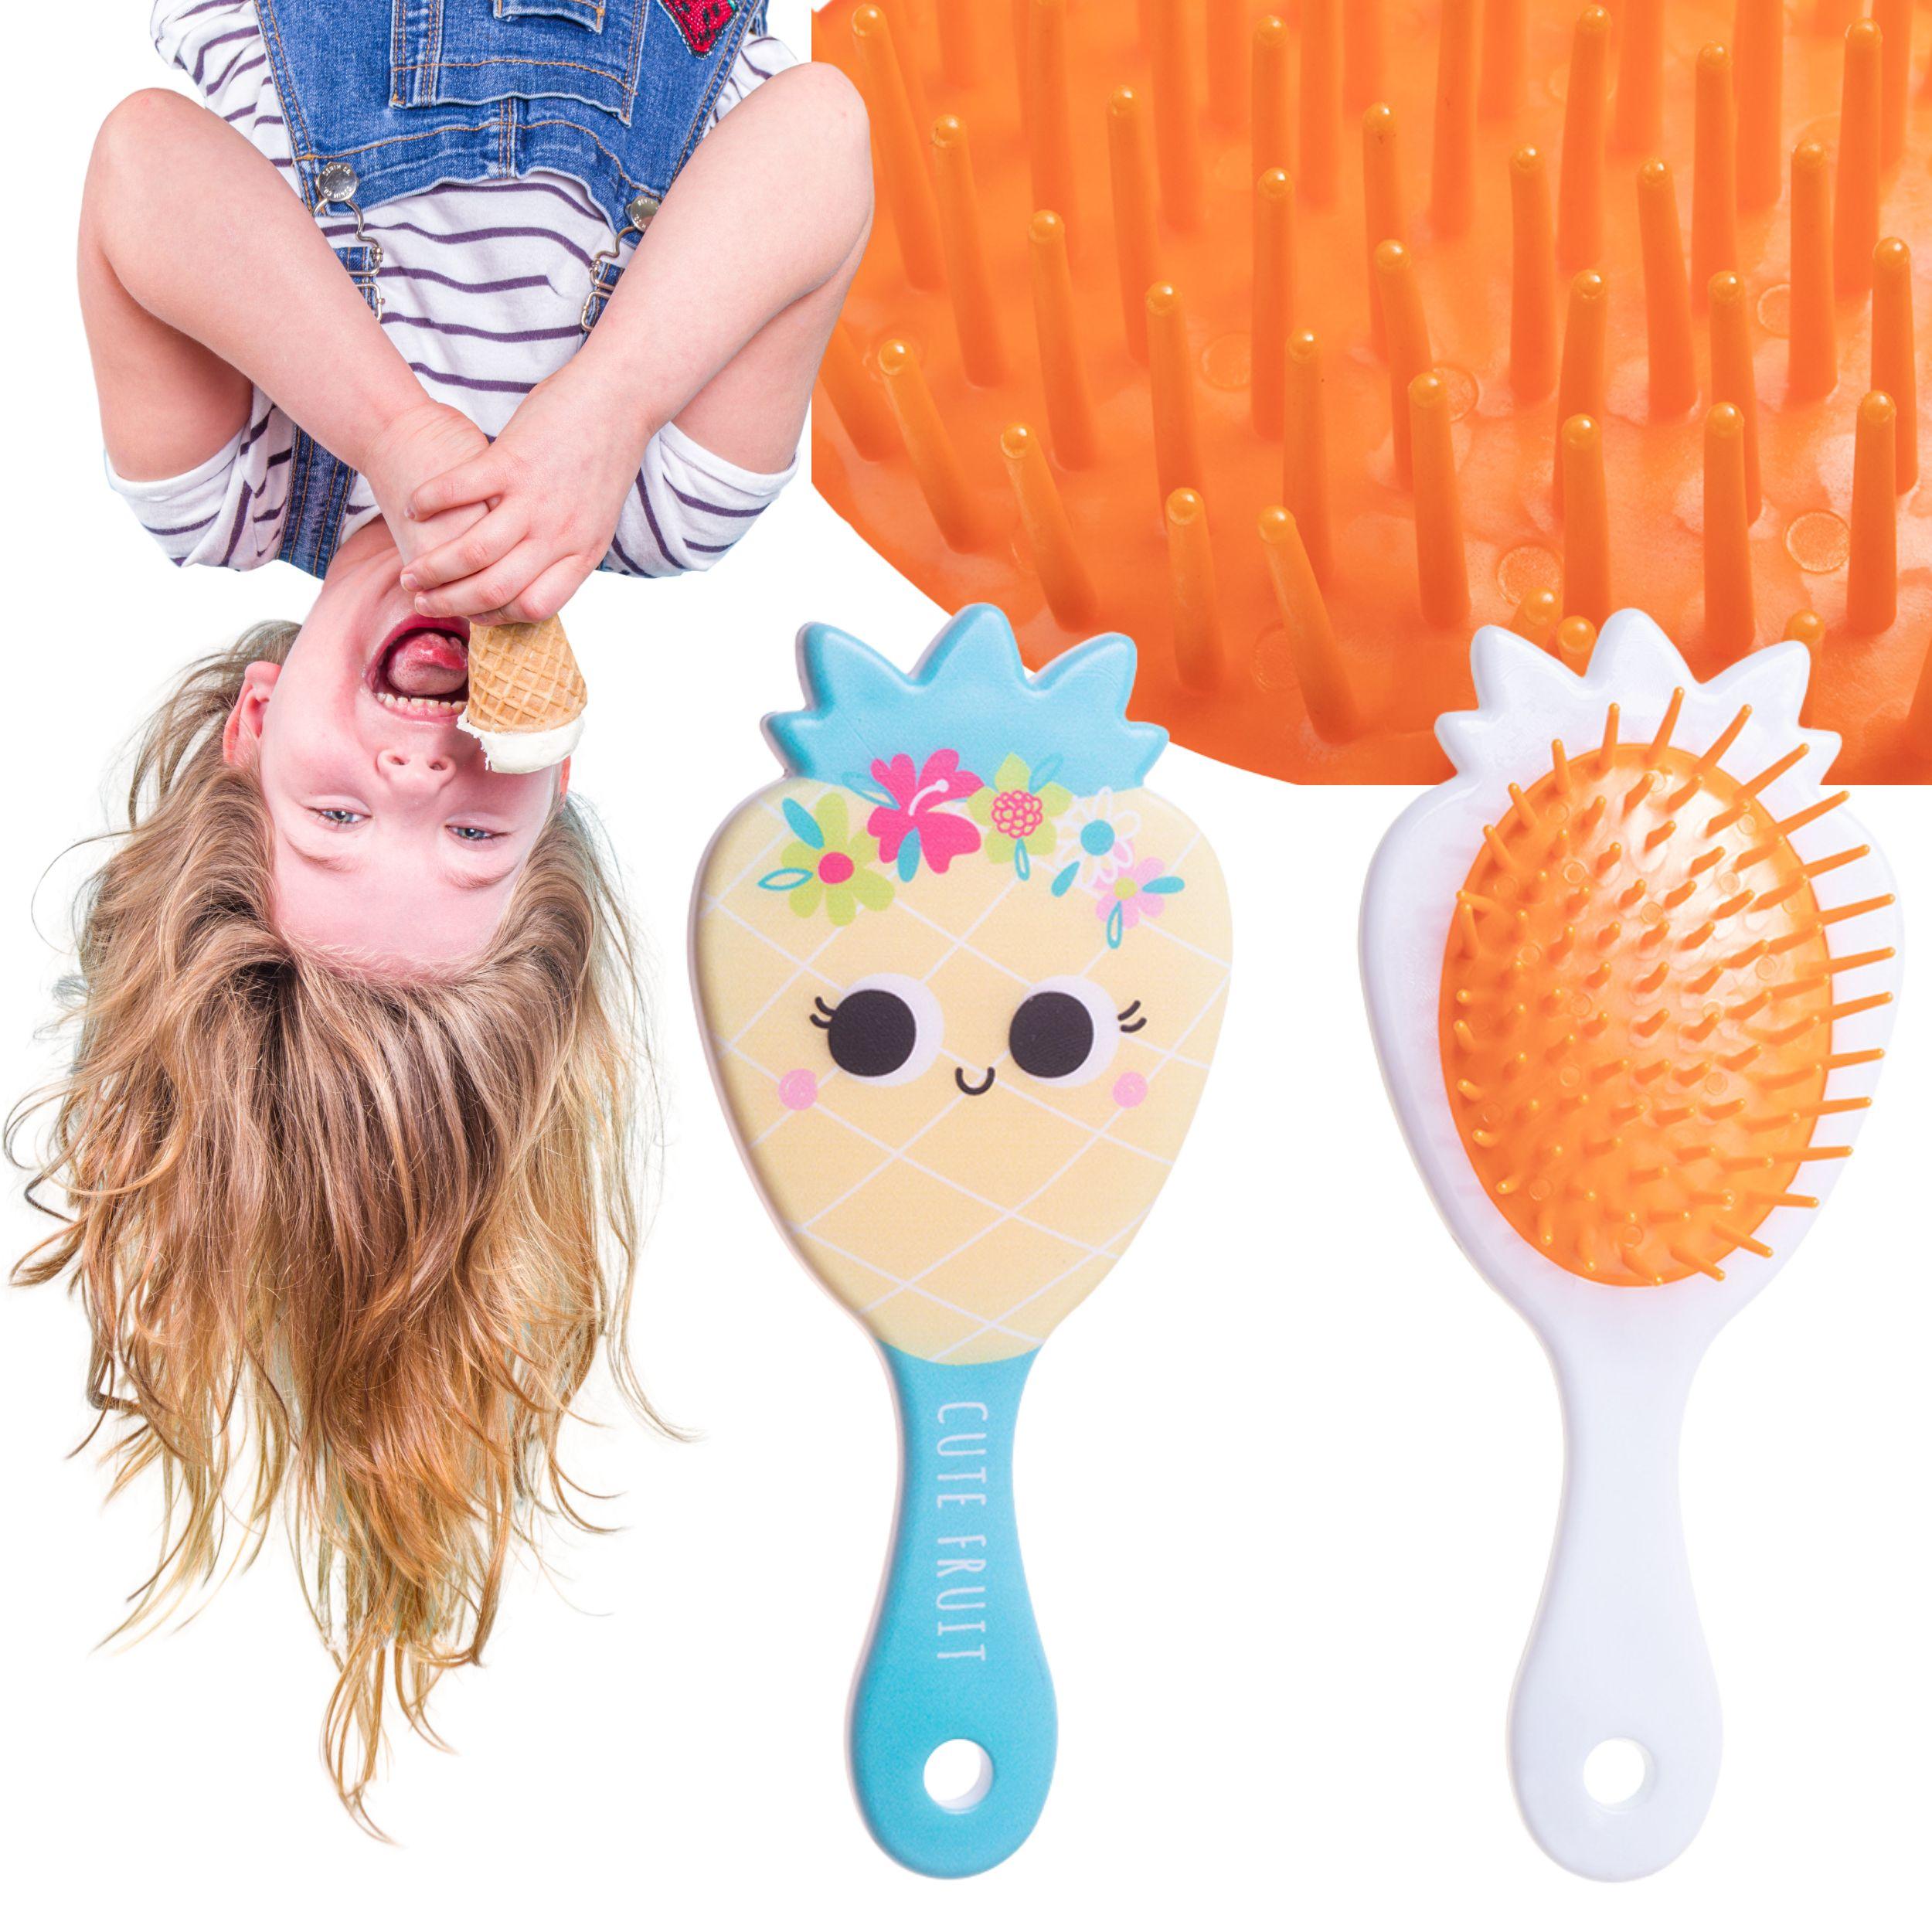 Children's hair brush for children - blue handle